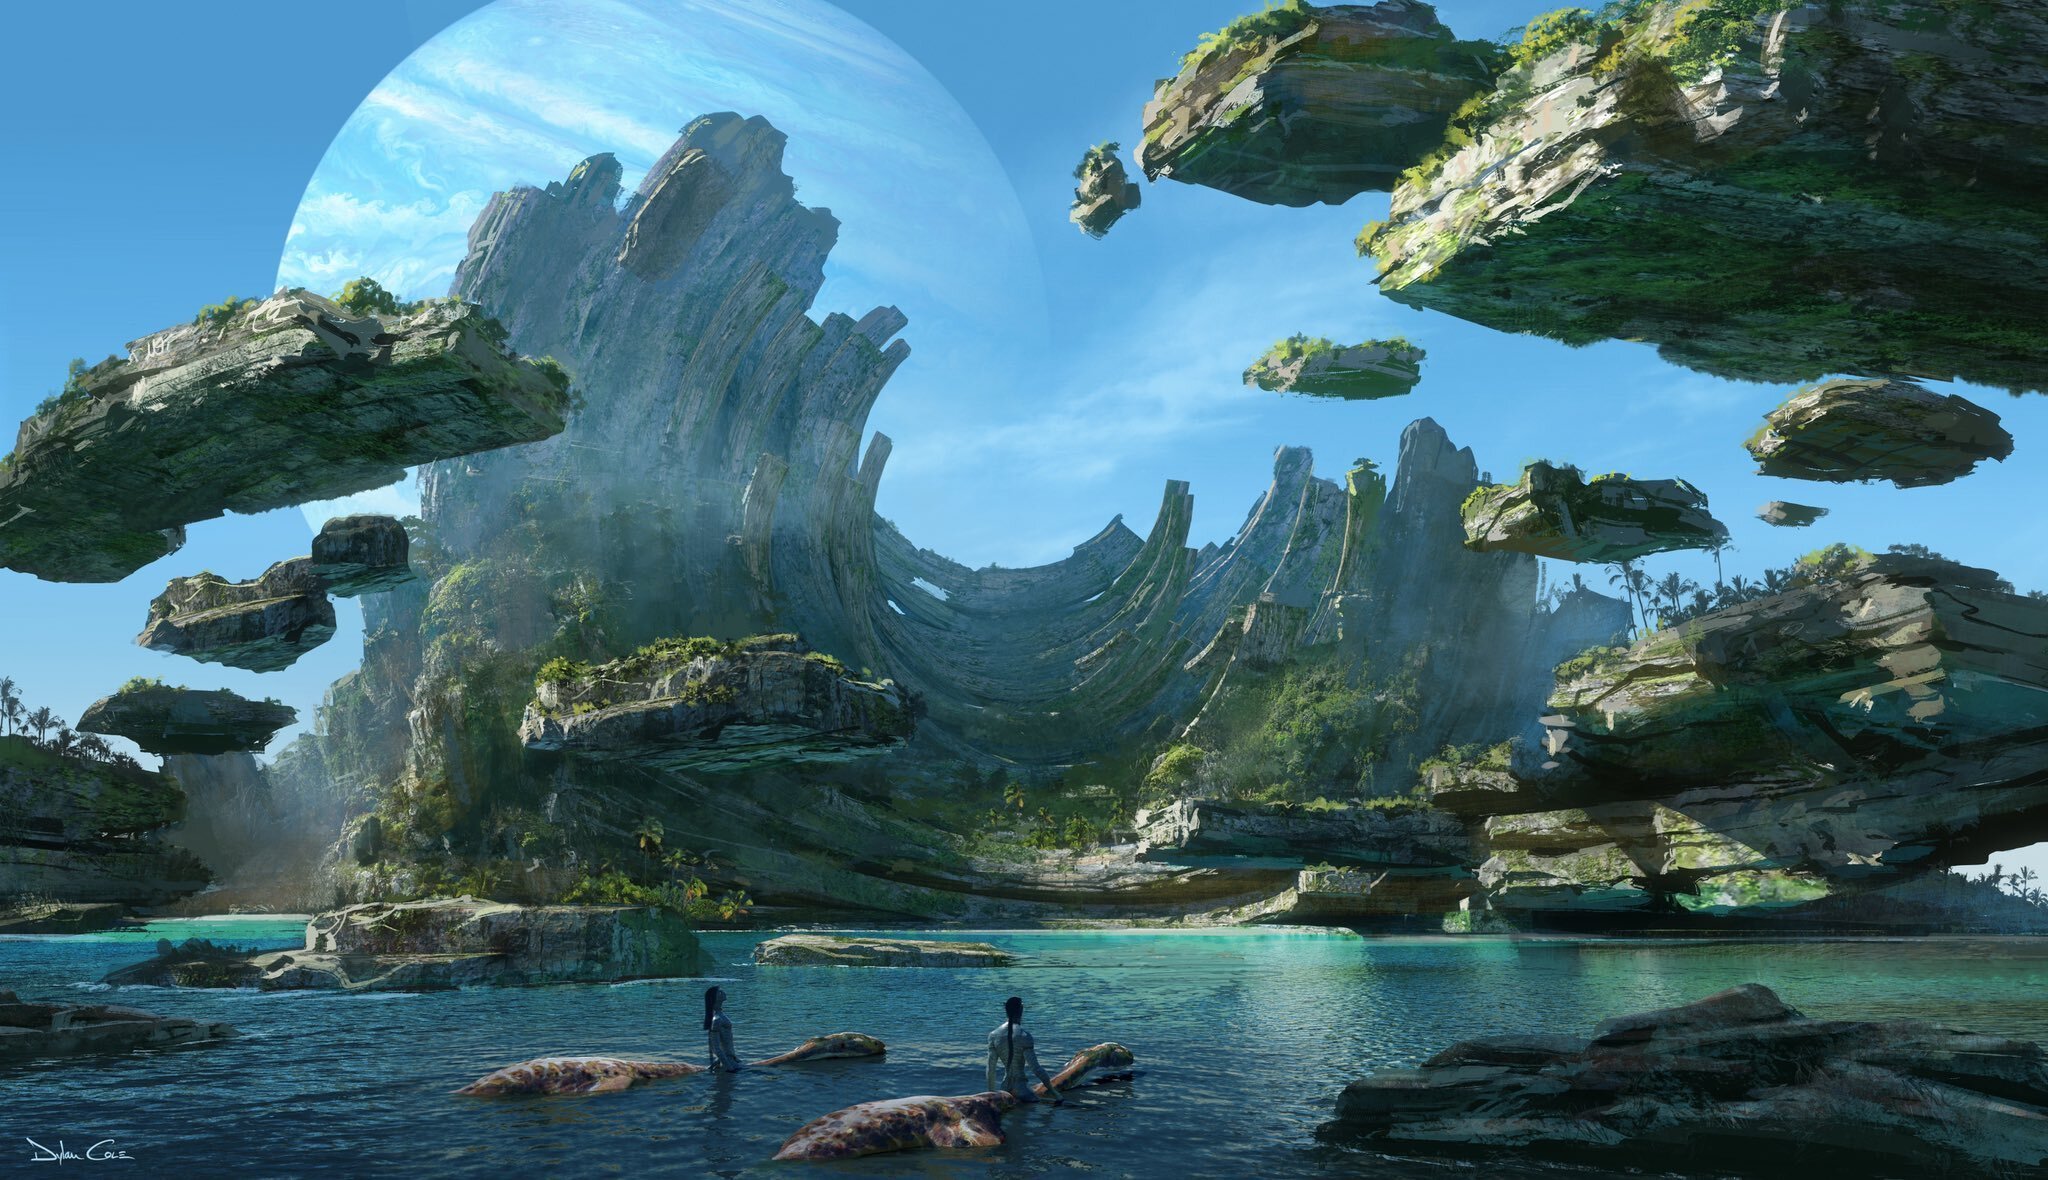 Điều tuyệt vời là đến nay, chúng ta có thể tận hưởng phiên bản 3D tuyệt vời hơn bao giờ hết. Qua định dạng IMAX, chúng ta sẽ được đắm chìm trong thế giới của Pandora và trải nghiệm cảm giác sống động hơn. Đừng bỏ lỡ cơ hội xem Avatar 2 ở định dạng IMAX 3D nhé.